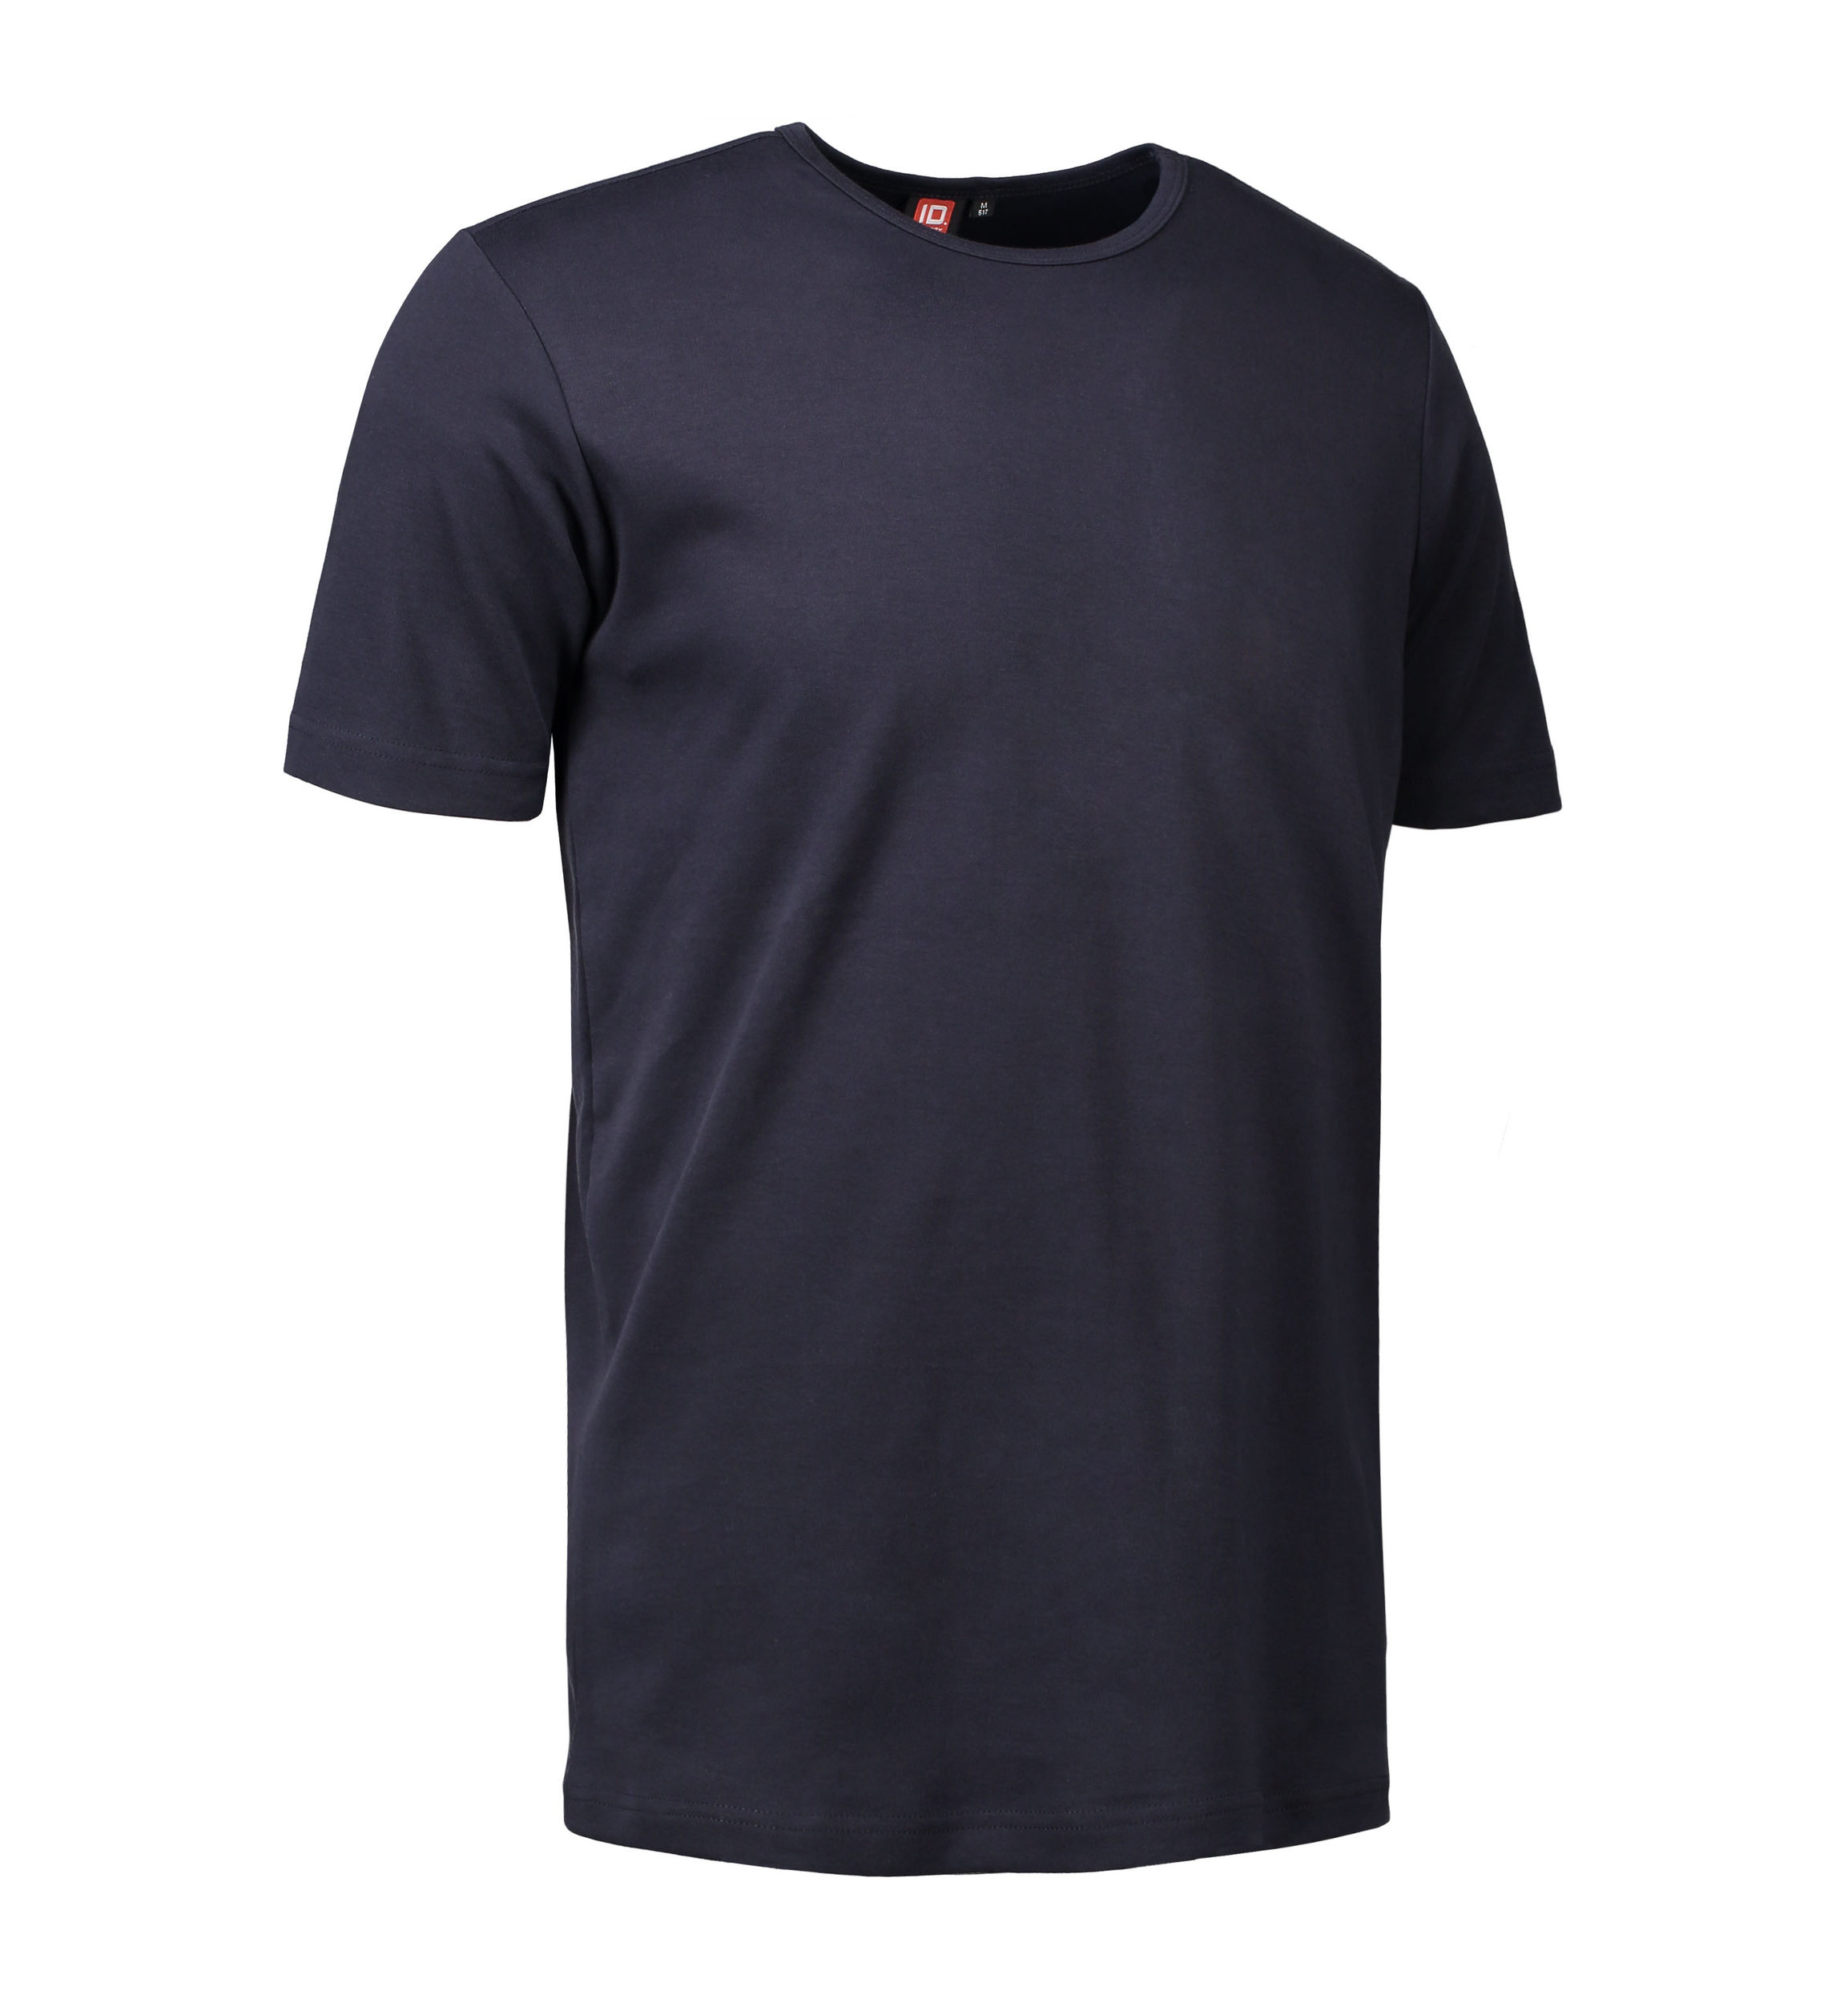 Billede af Navy t-shirt med rund hals til mænd - M hos Sygeplejebutikken.dk